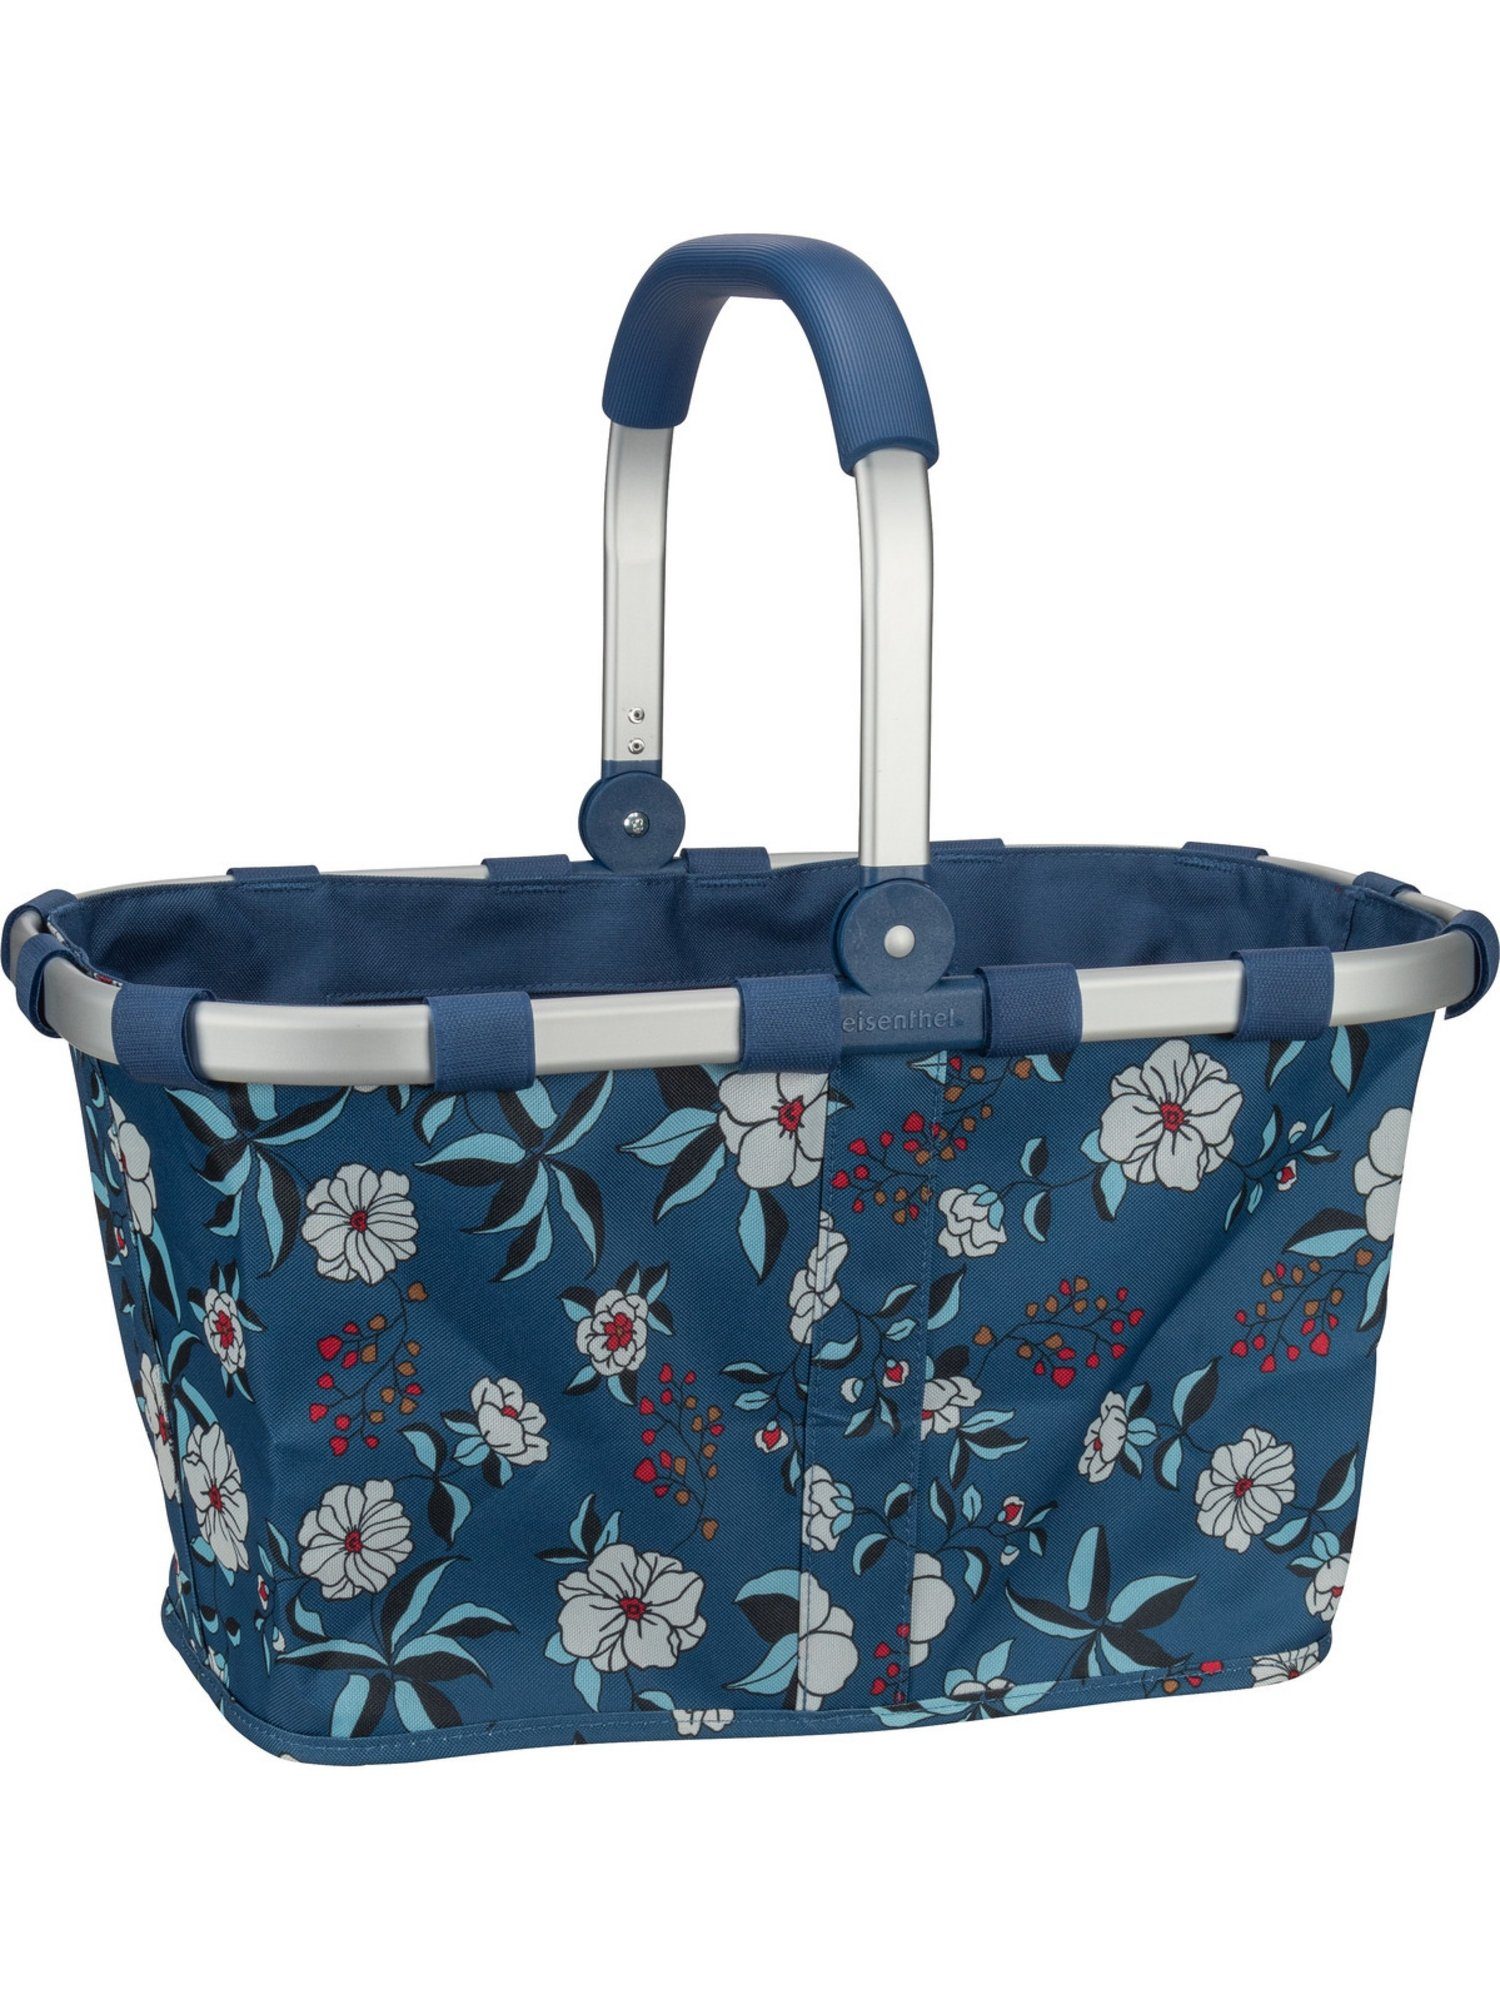 Einkaufsbeutel l carrybag, Blue REISENTHEL® 22 Garden